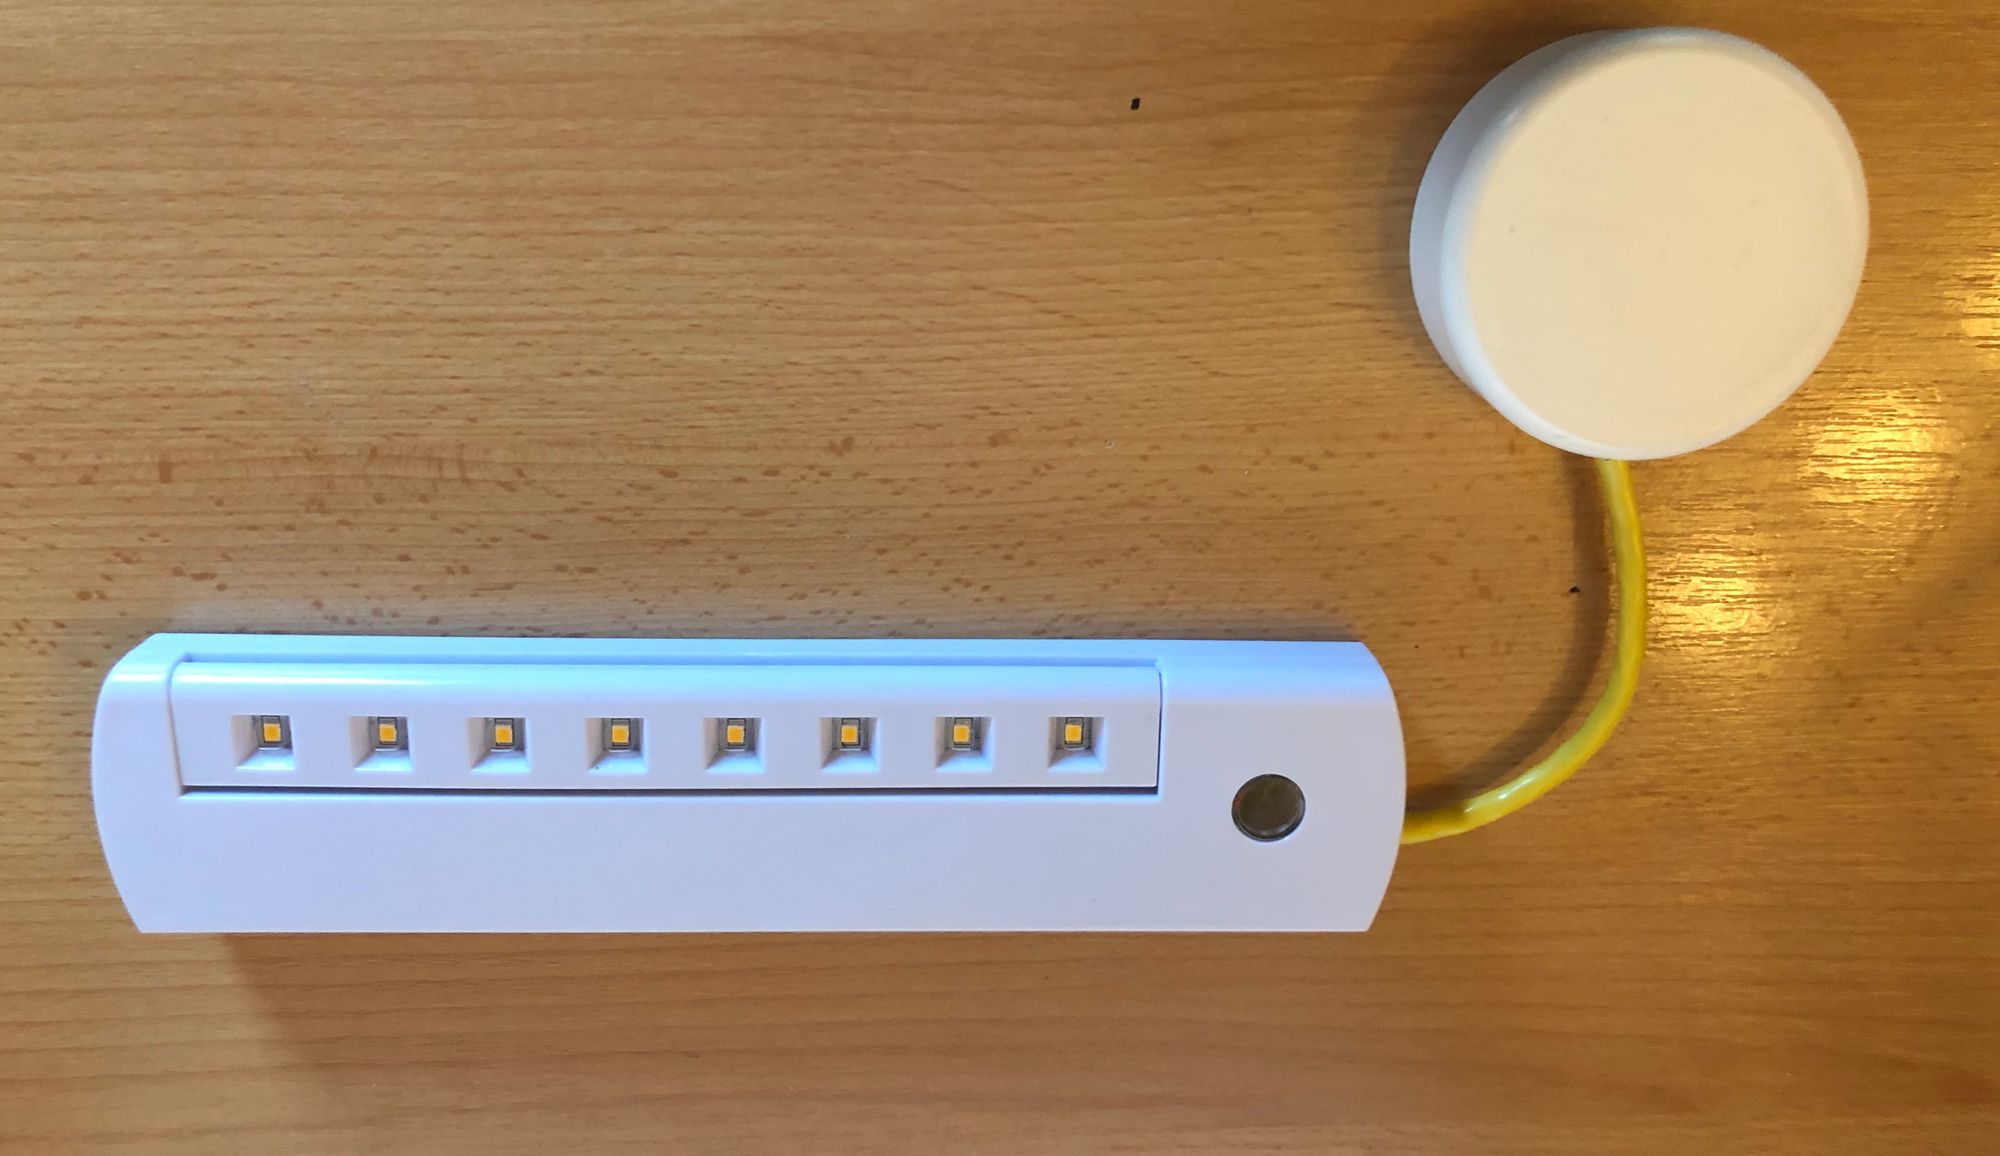 Grundig LED-Schrankleuchte in Homematic einbinden.